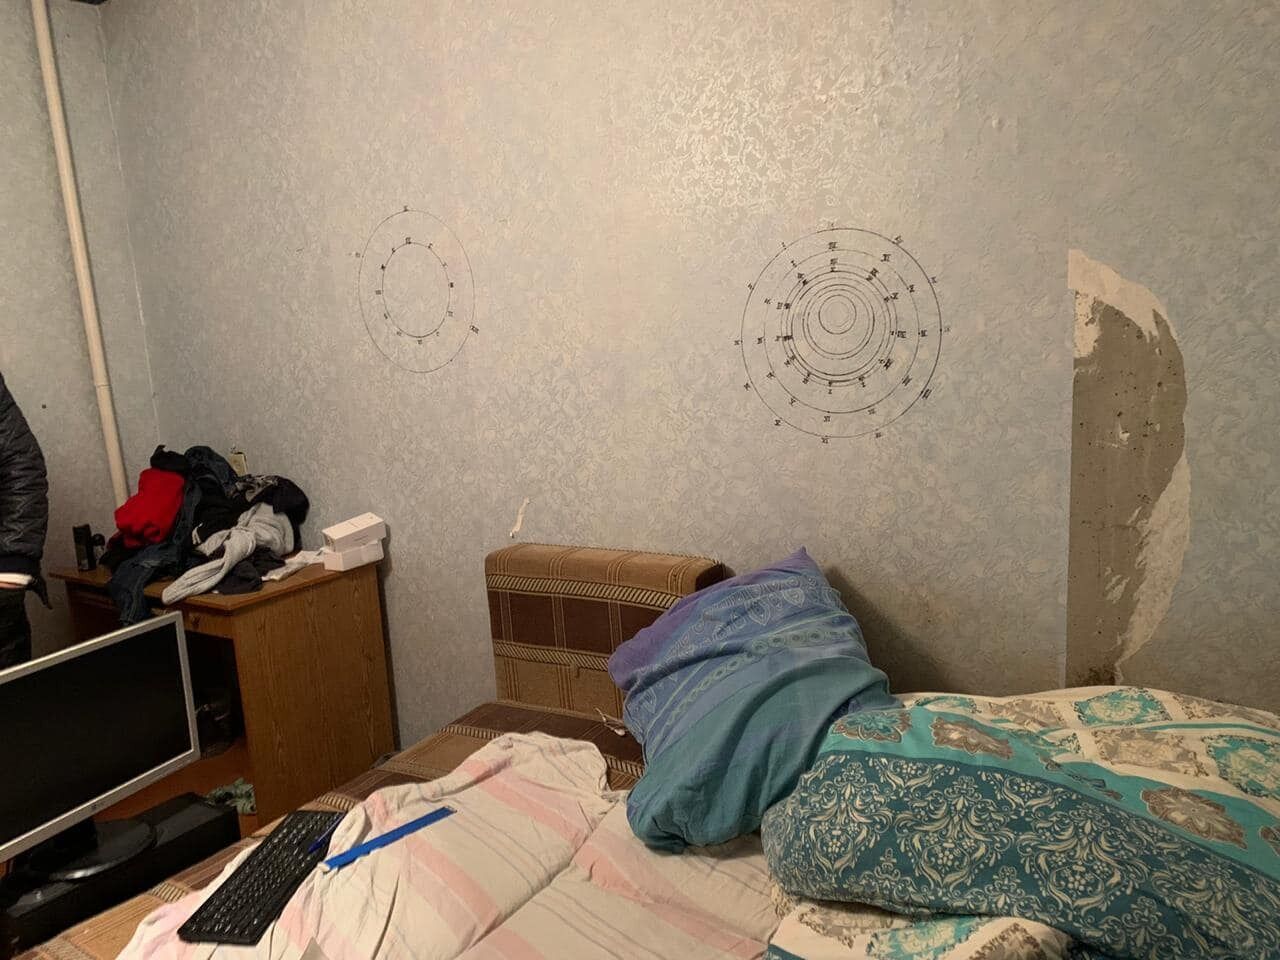 Мужчина, убивший людей в Кривом Роге, рисовал на стенах странные круги